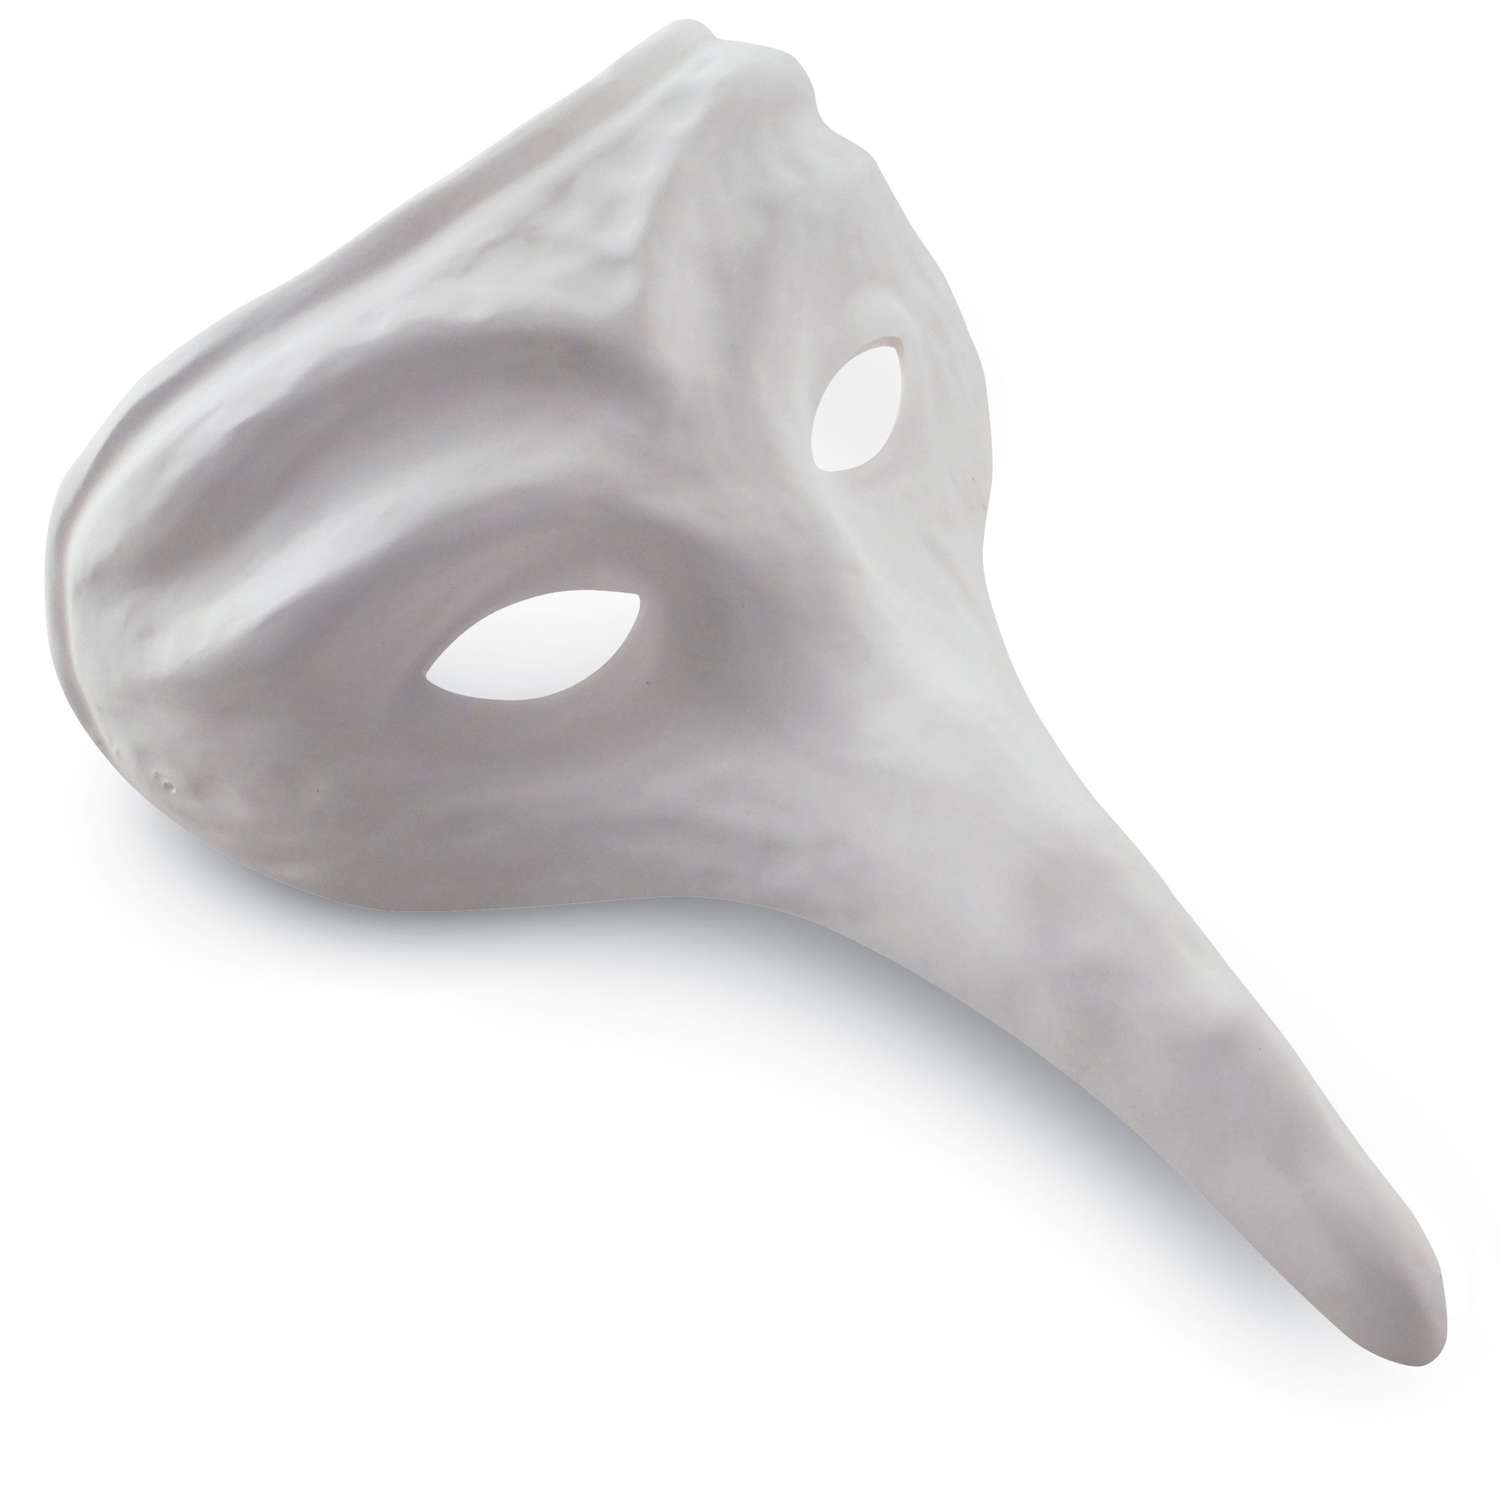 Maschera plastica bianca pvc donna Carnevale da decorare o